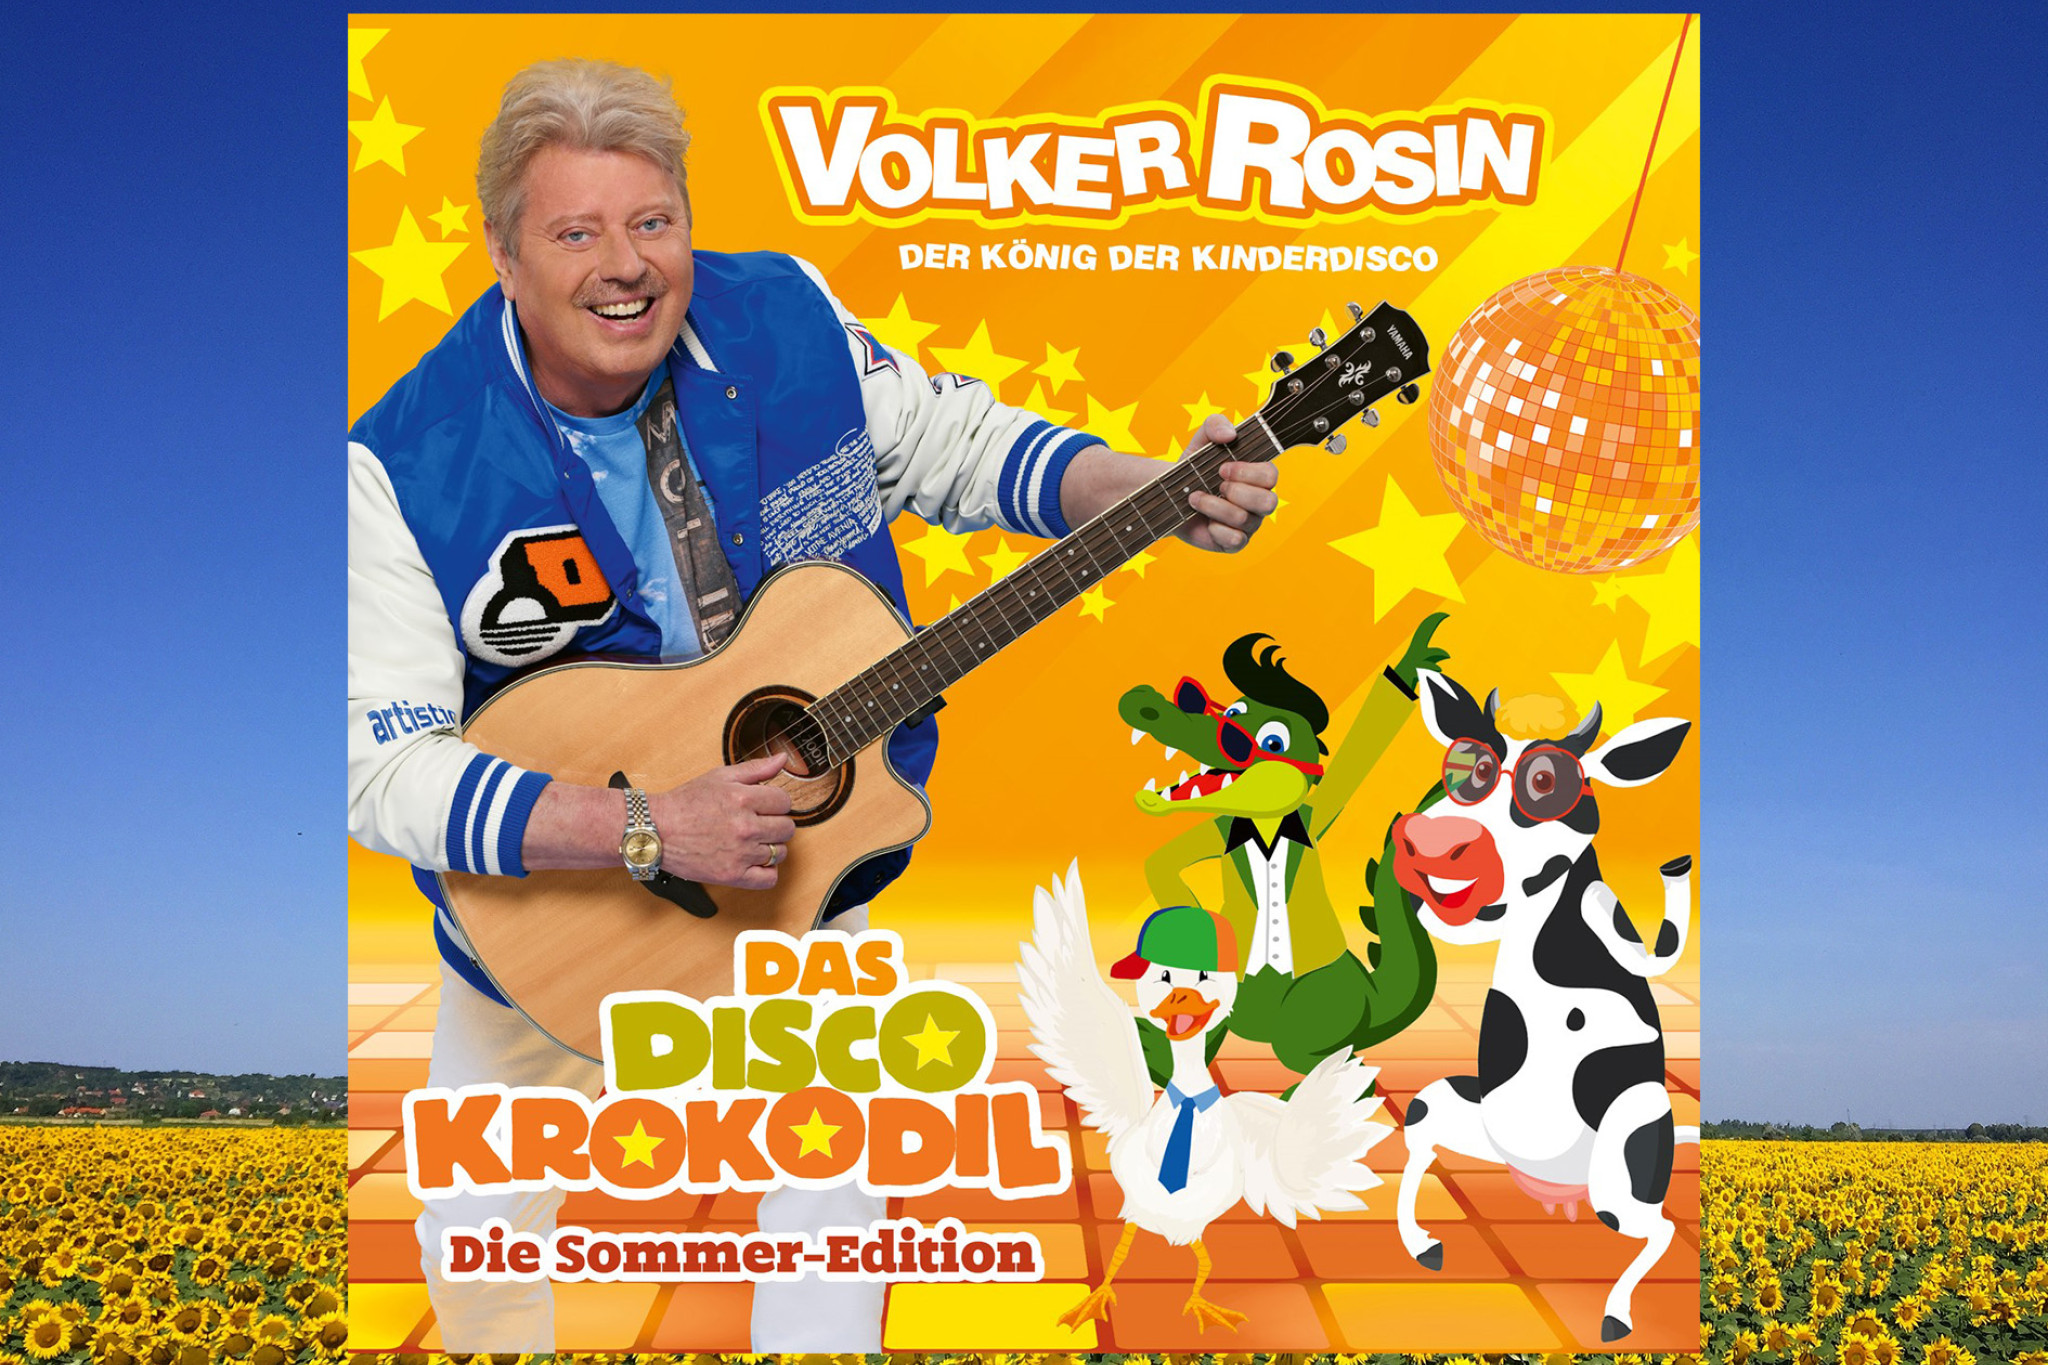 Volker Rosin veröffentlicht die Sommer-Edition seines Albums "Das Disco-Krokodil"